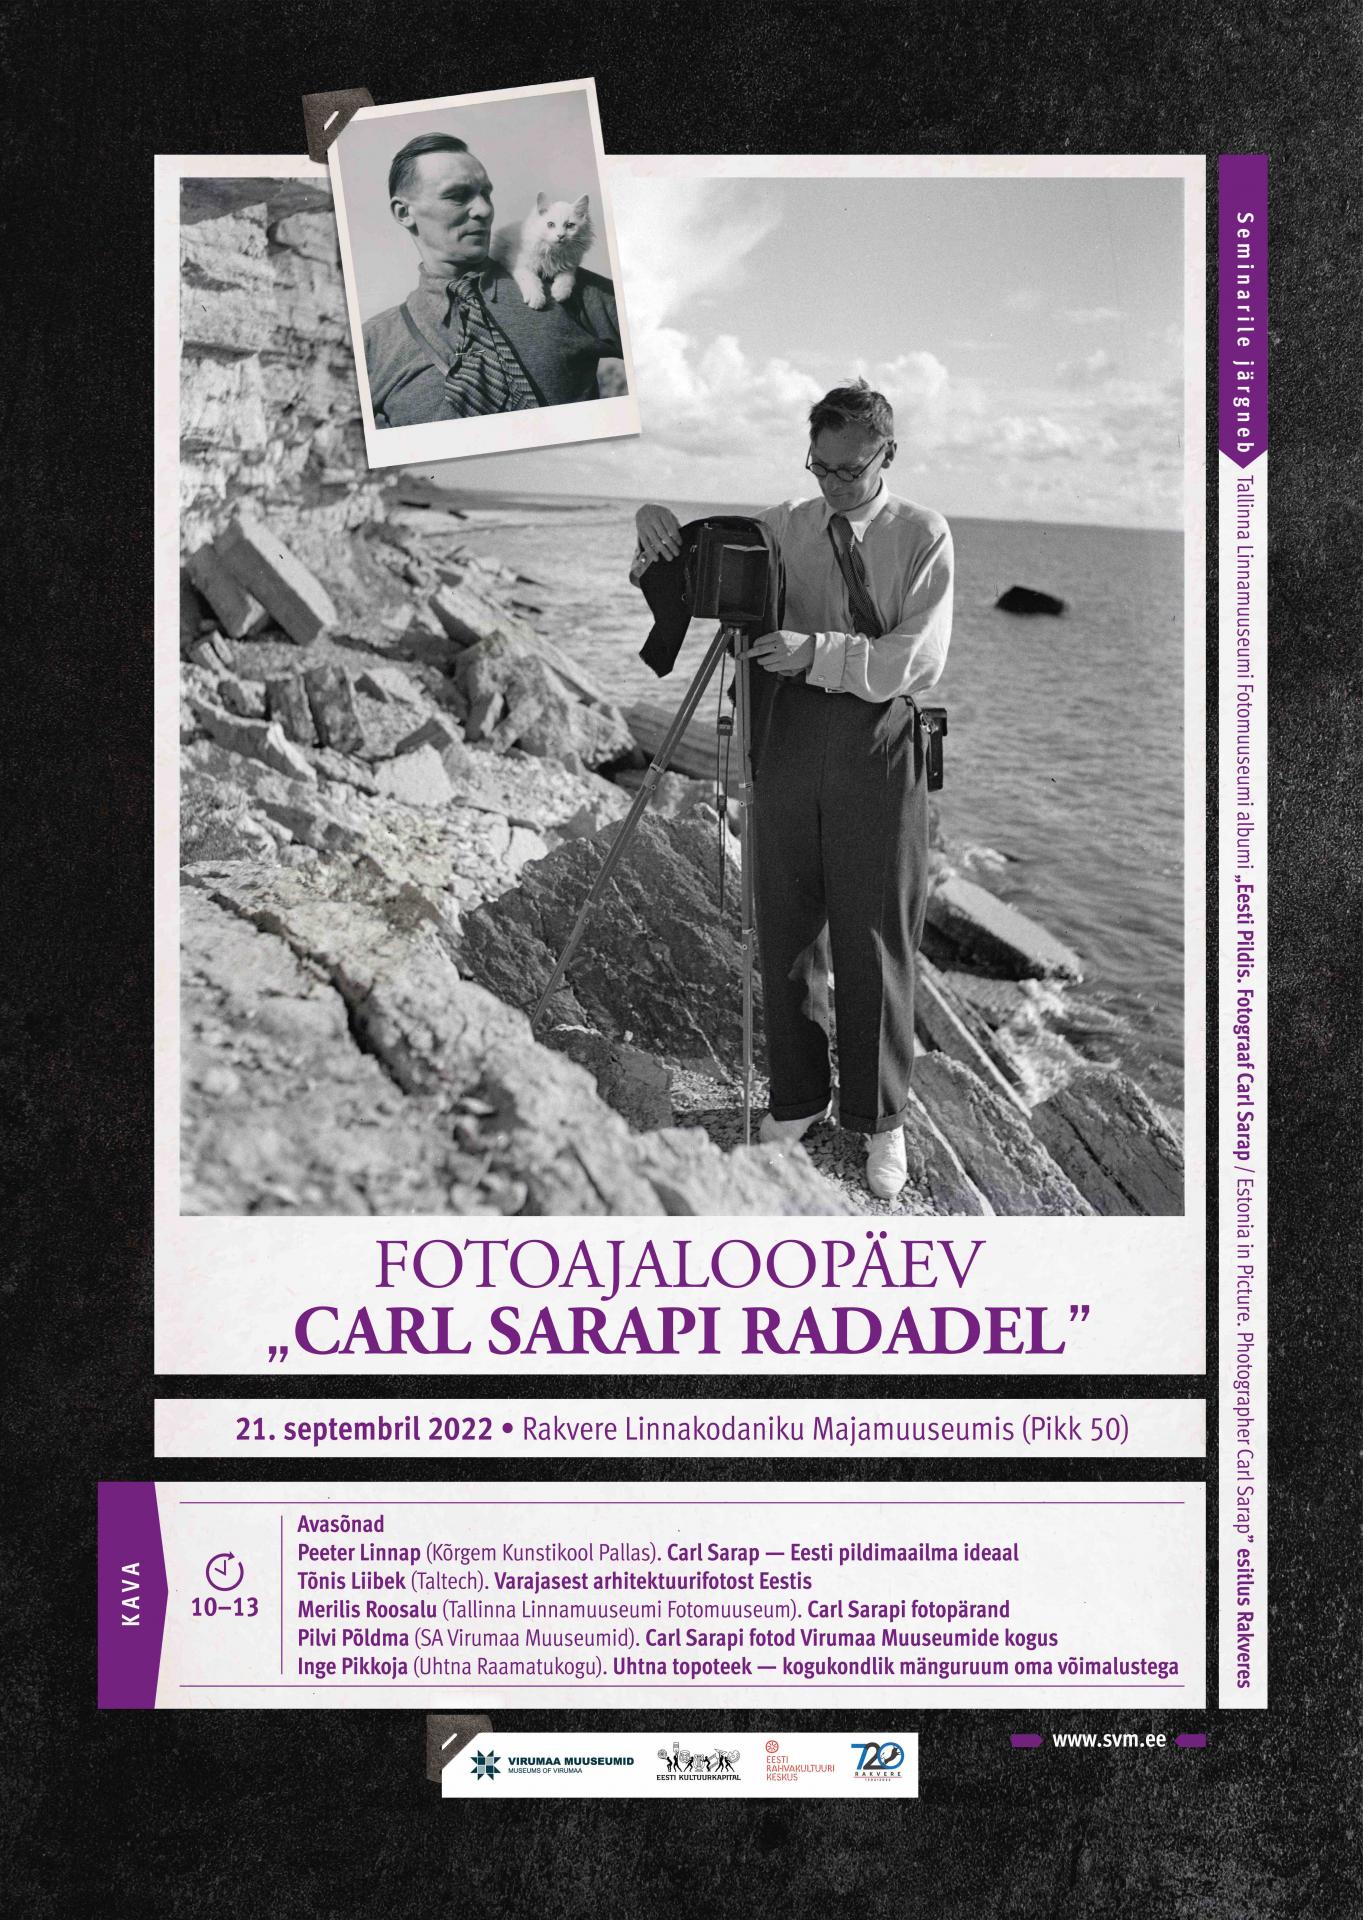 Carl Sarap